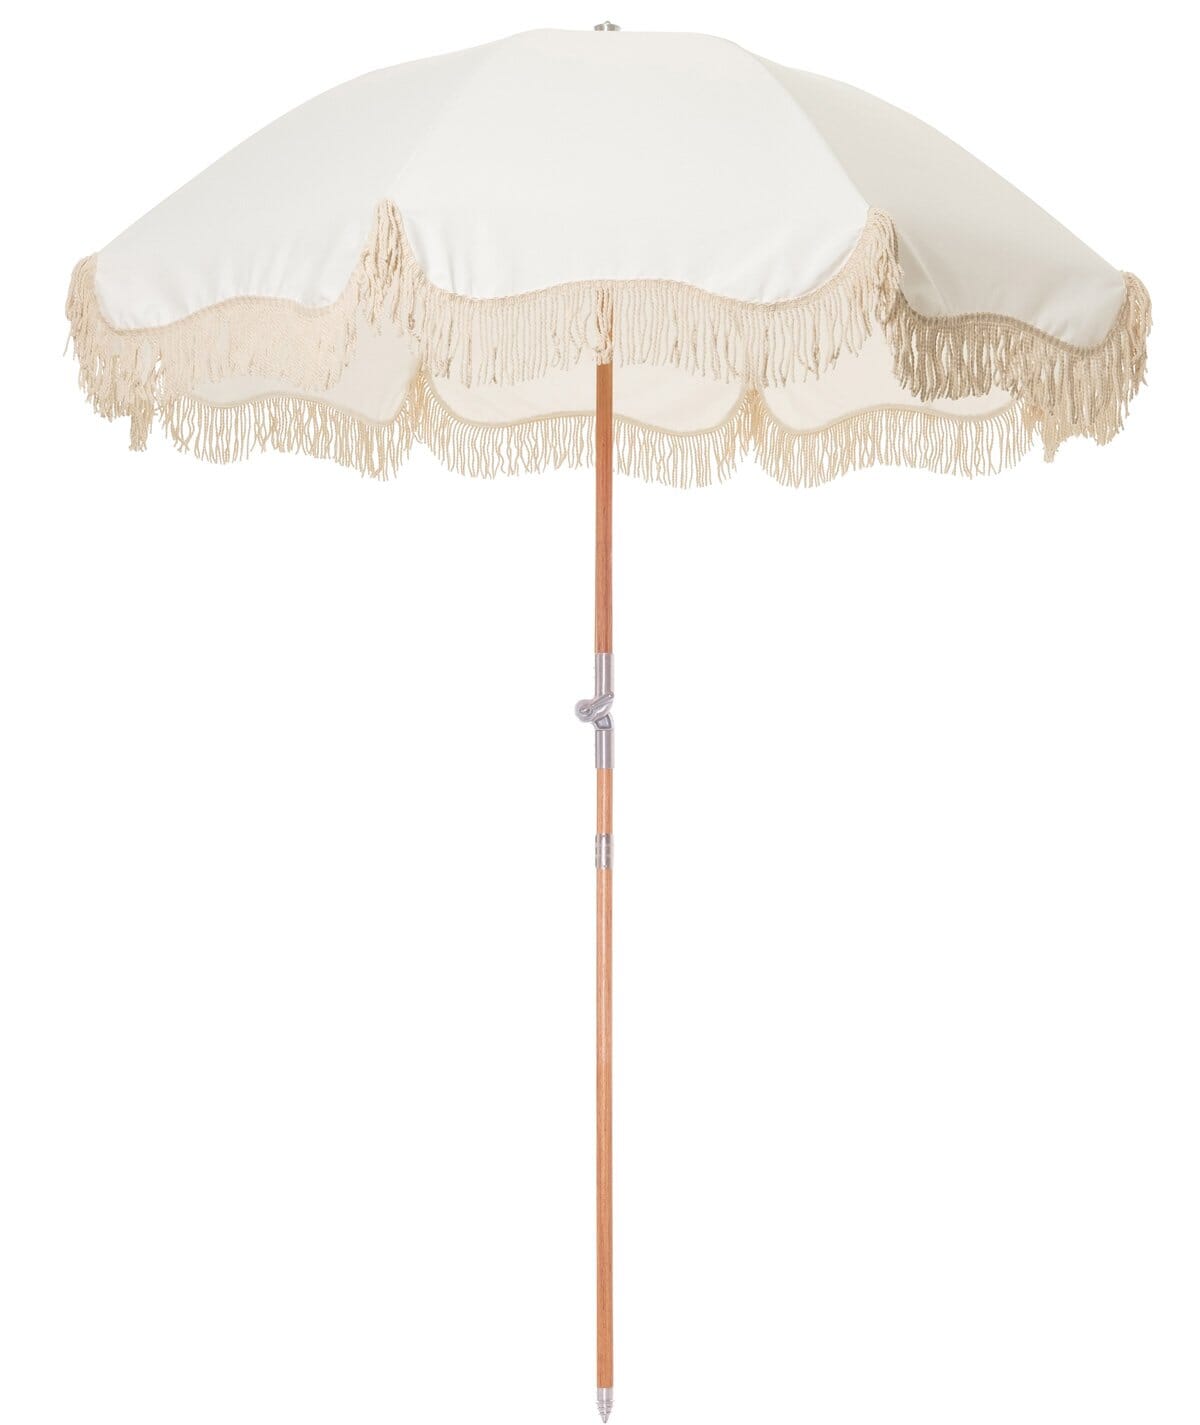 The Premium Beach Umbrella - Antique White - Business & Pleasure Co